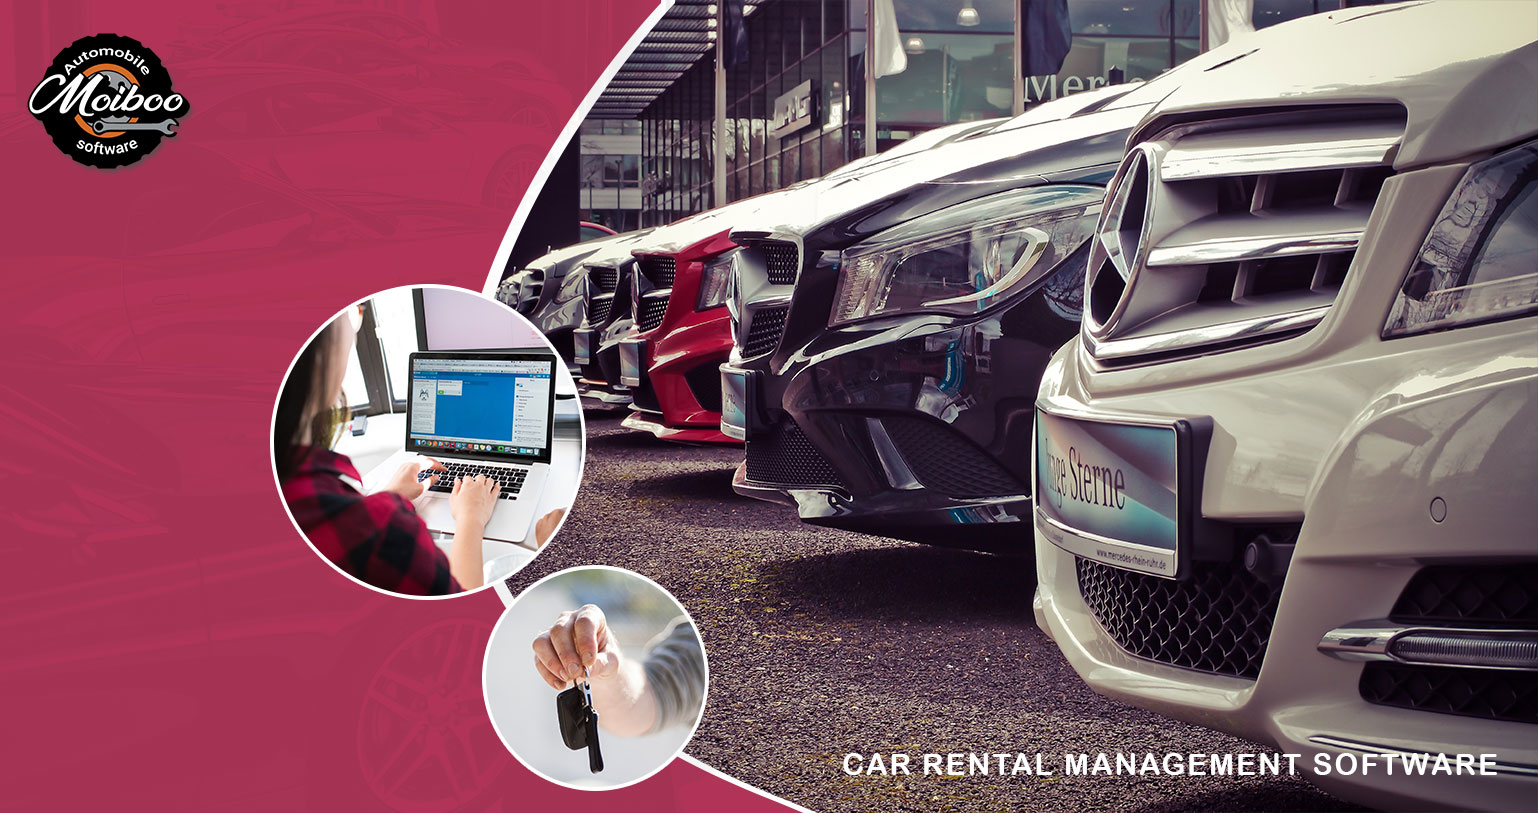 Car rental management software